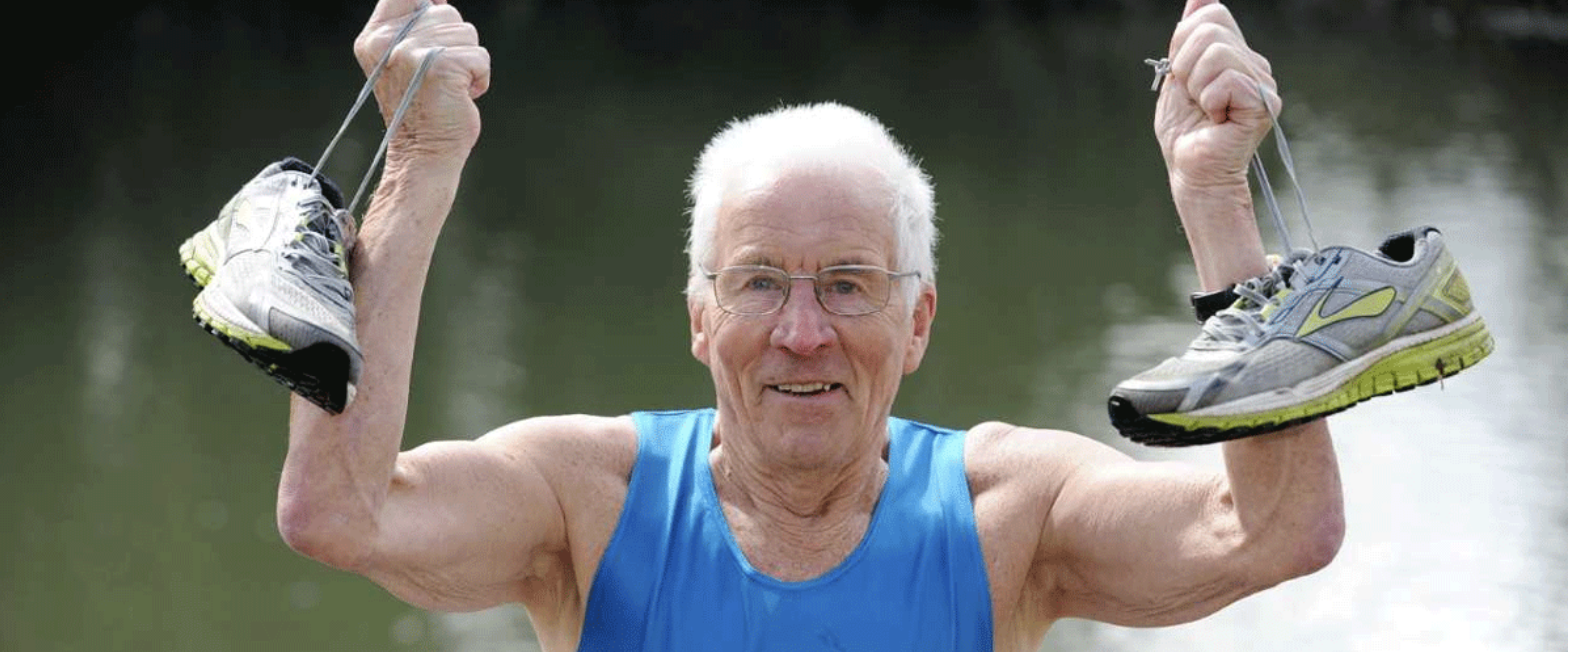 Cụ ông 93 tuổi tiết lộ bí quyết khoẻ mạnh, tập gym 6 lần 1 tuần- Ảnh 1.